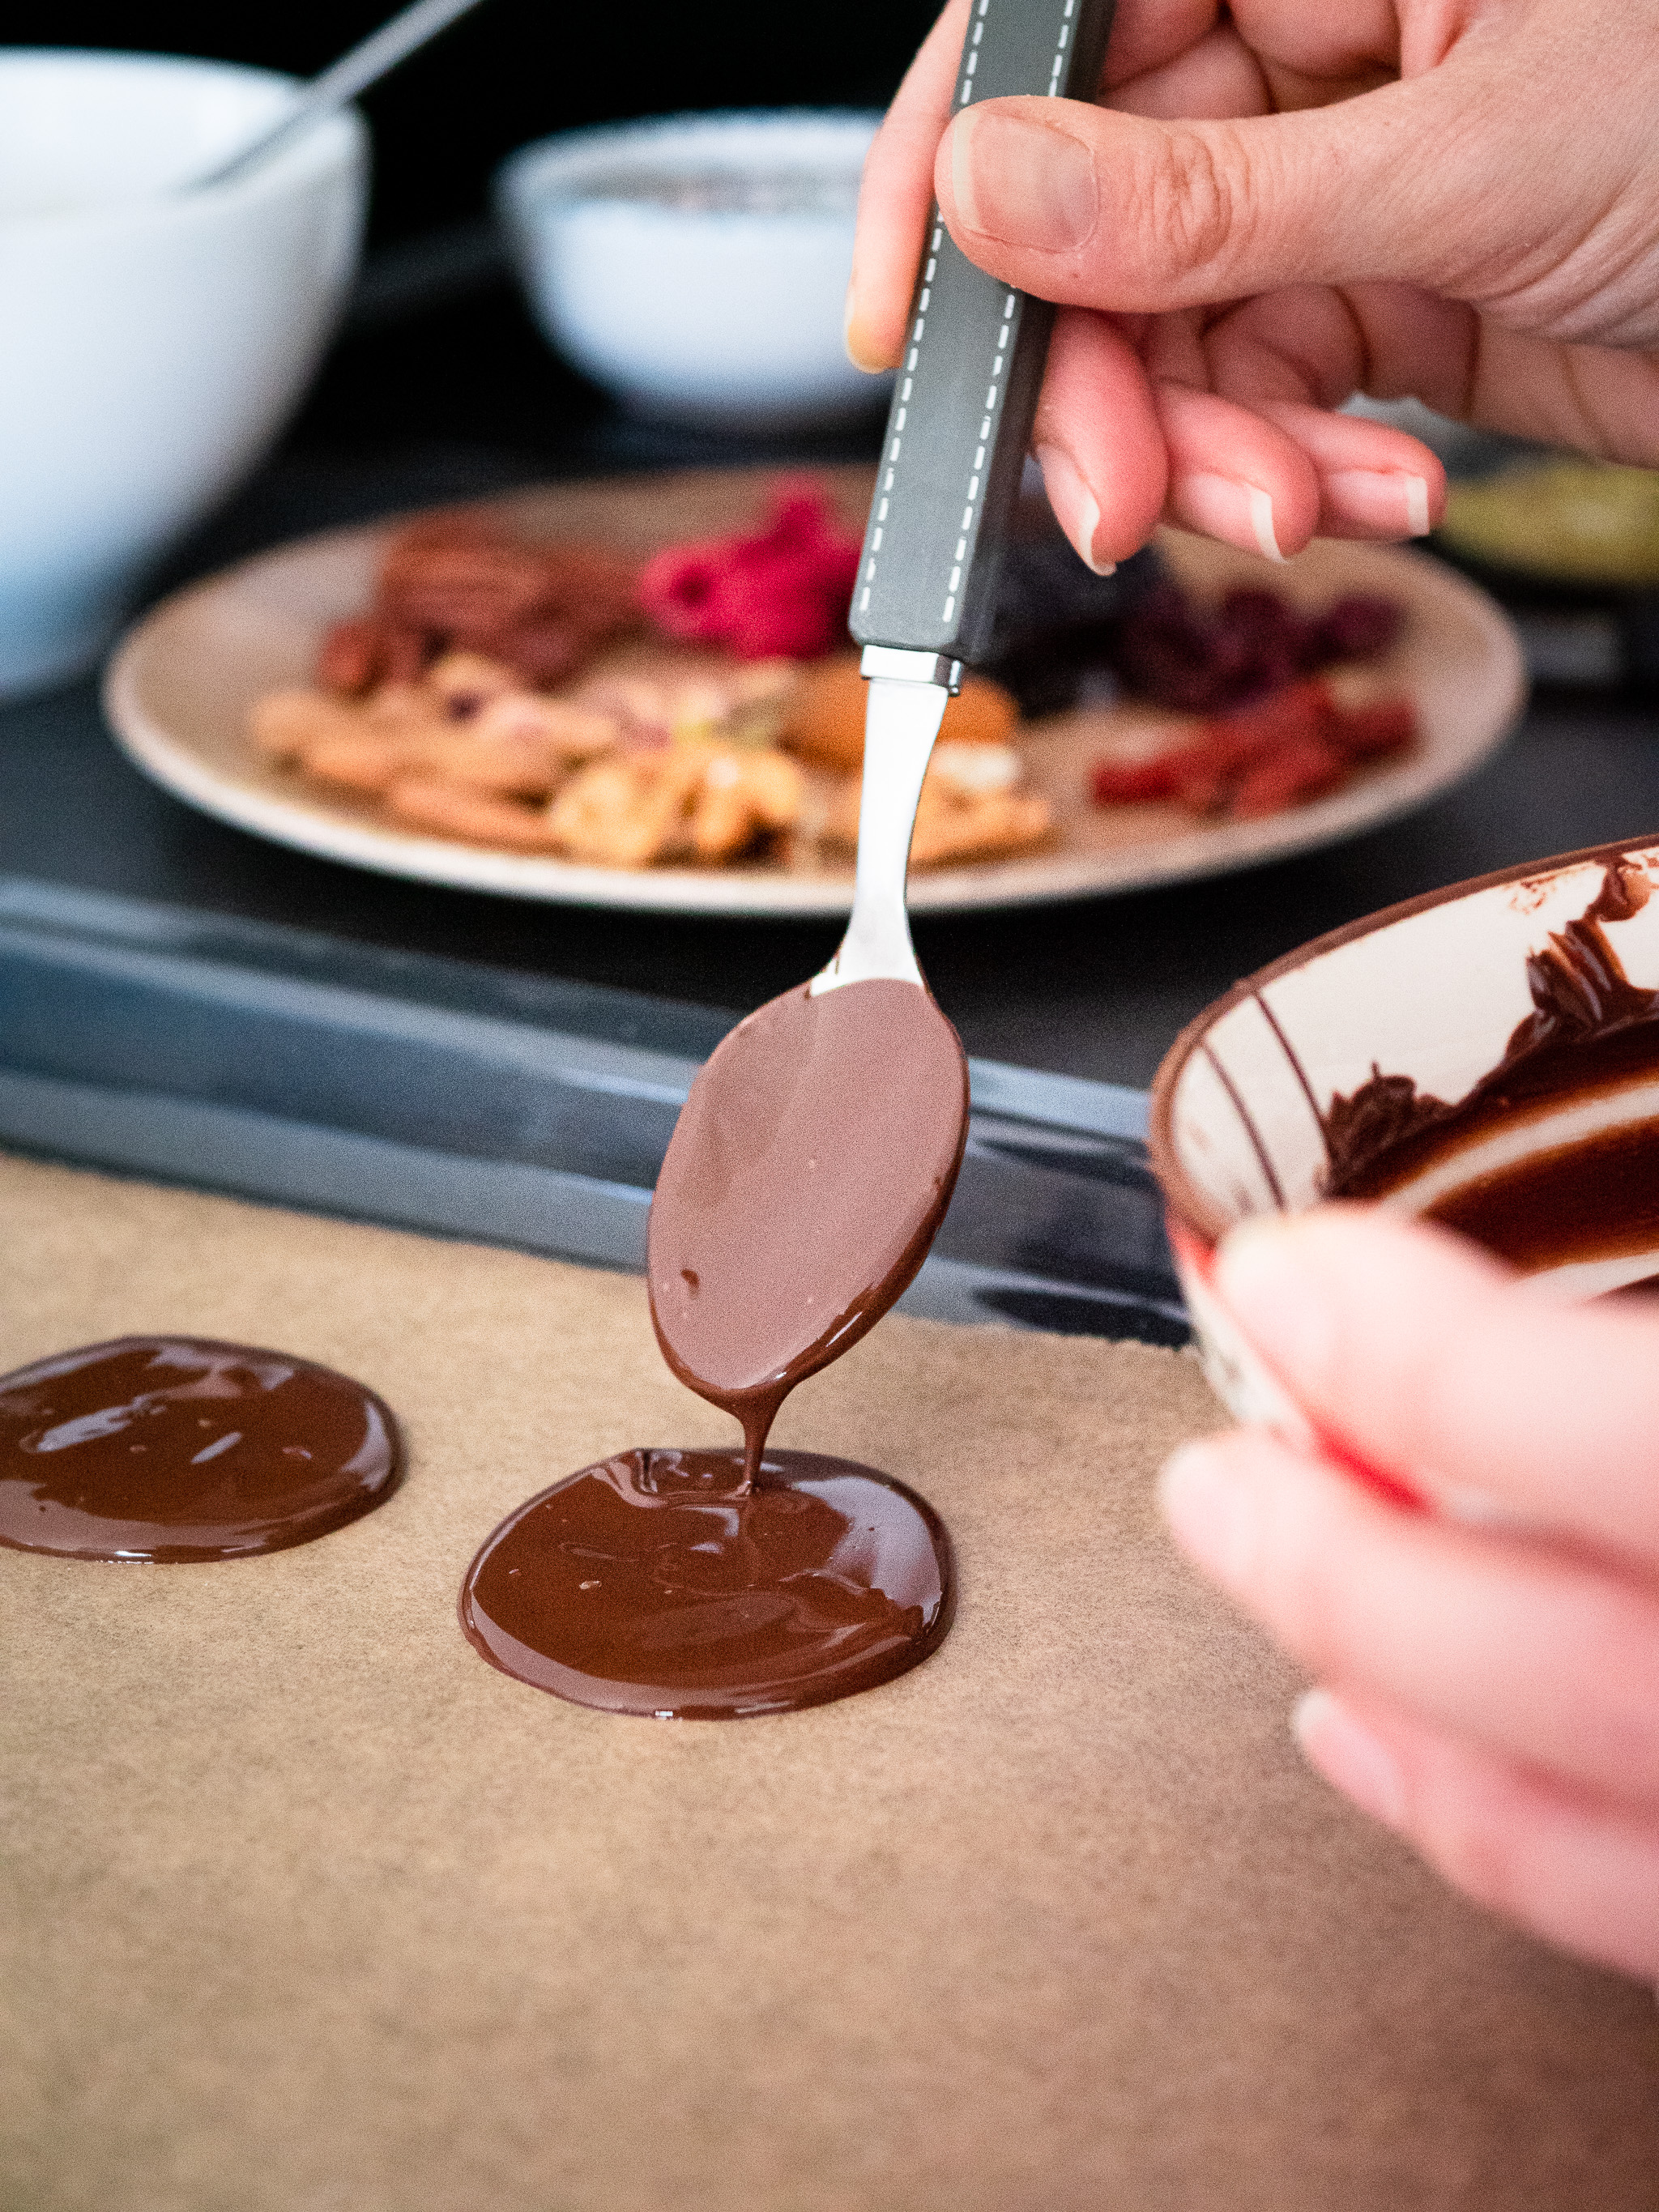 pour faire des mendiants, il suffit de couler du chocolat fondu en disque avant de les garnir de fruits et fruits à coque